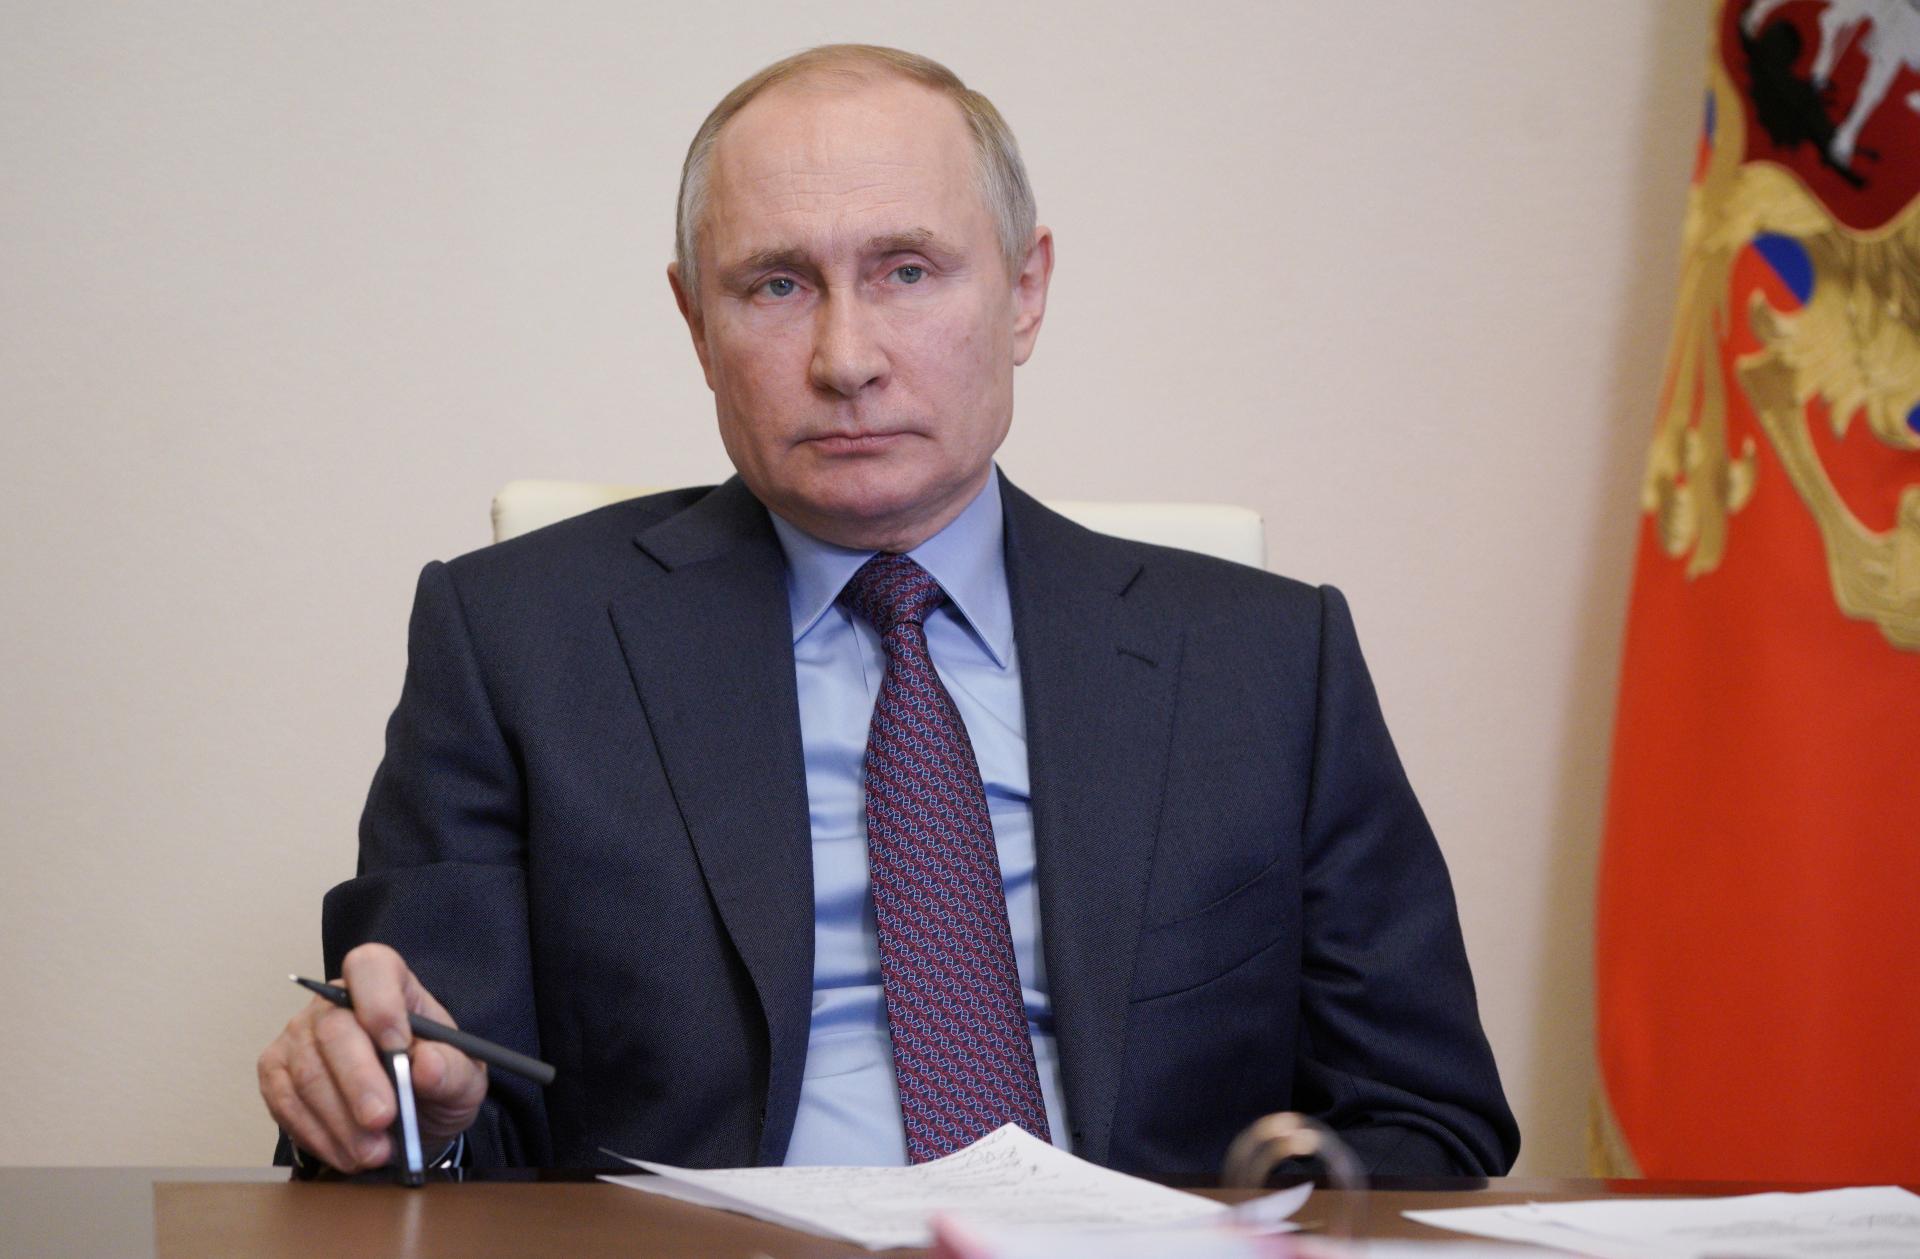 Увоен нацрт законот со кој му се дозволува на претседателот Путин да се кандидира уште два мандата